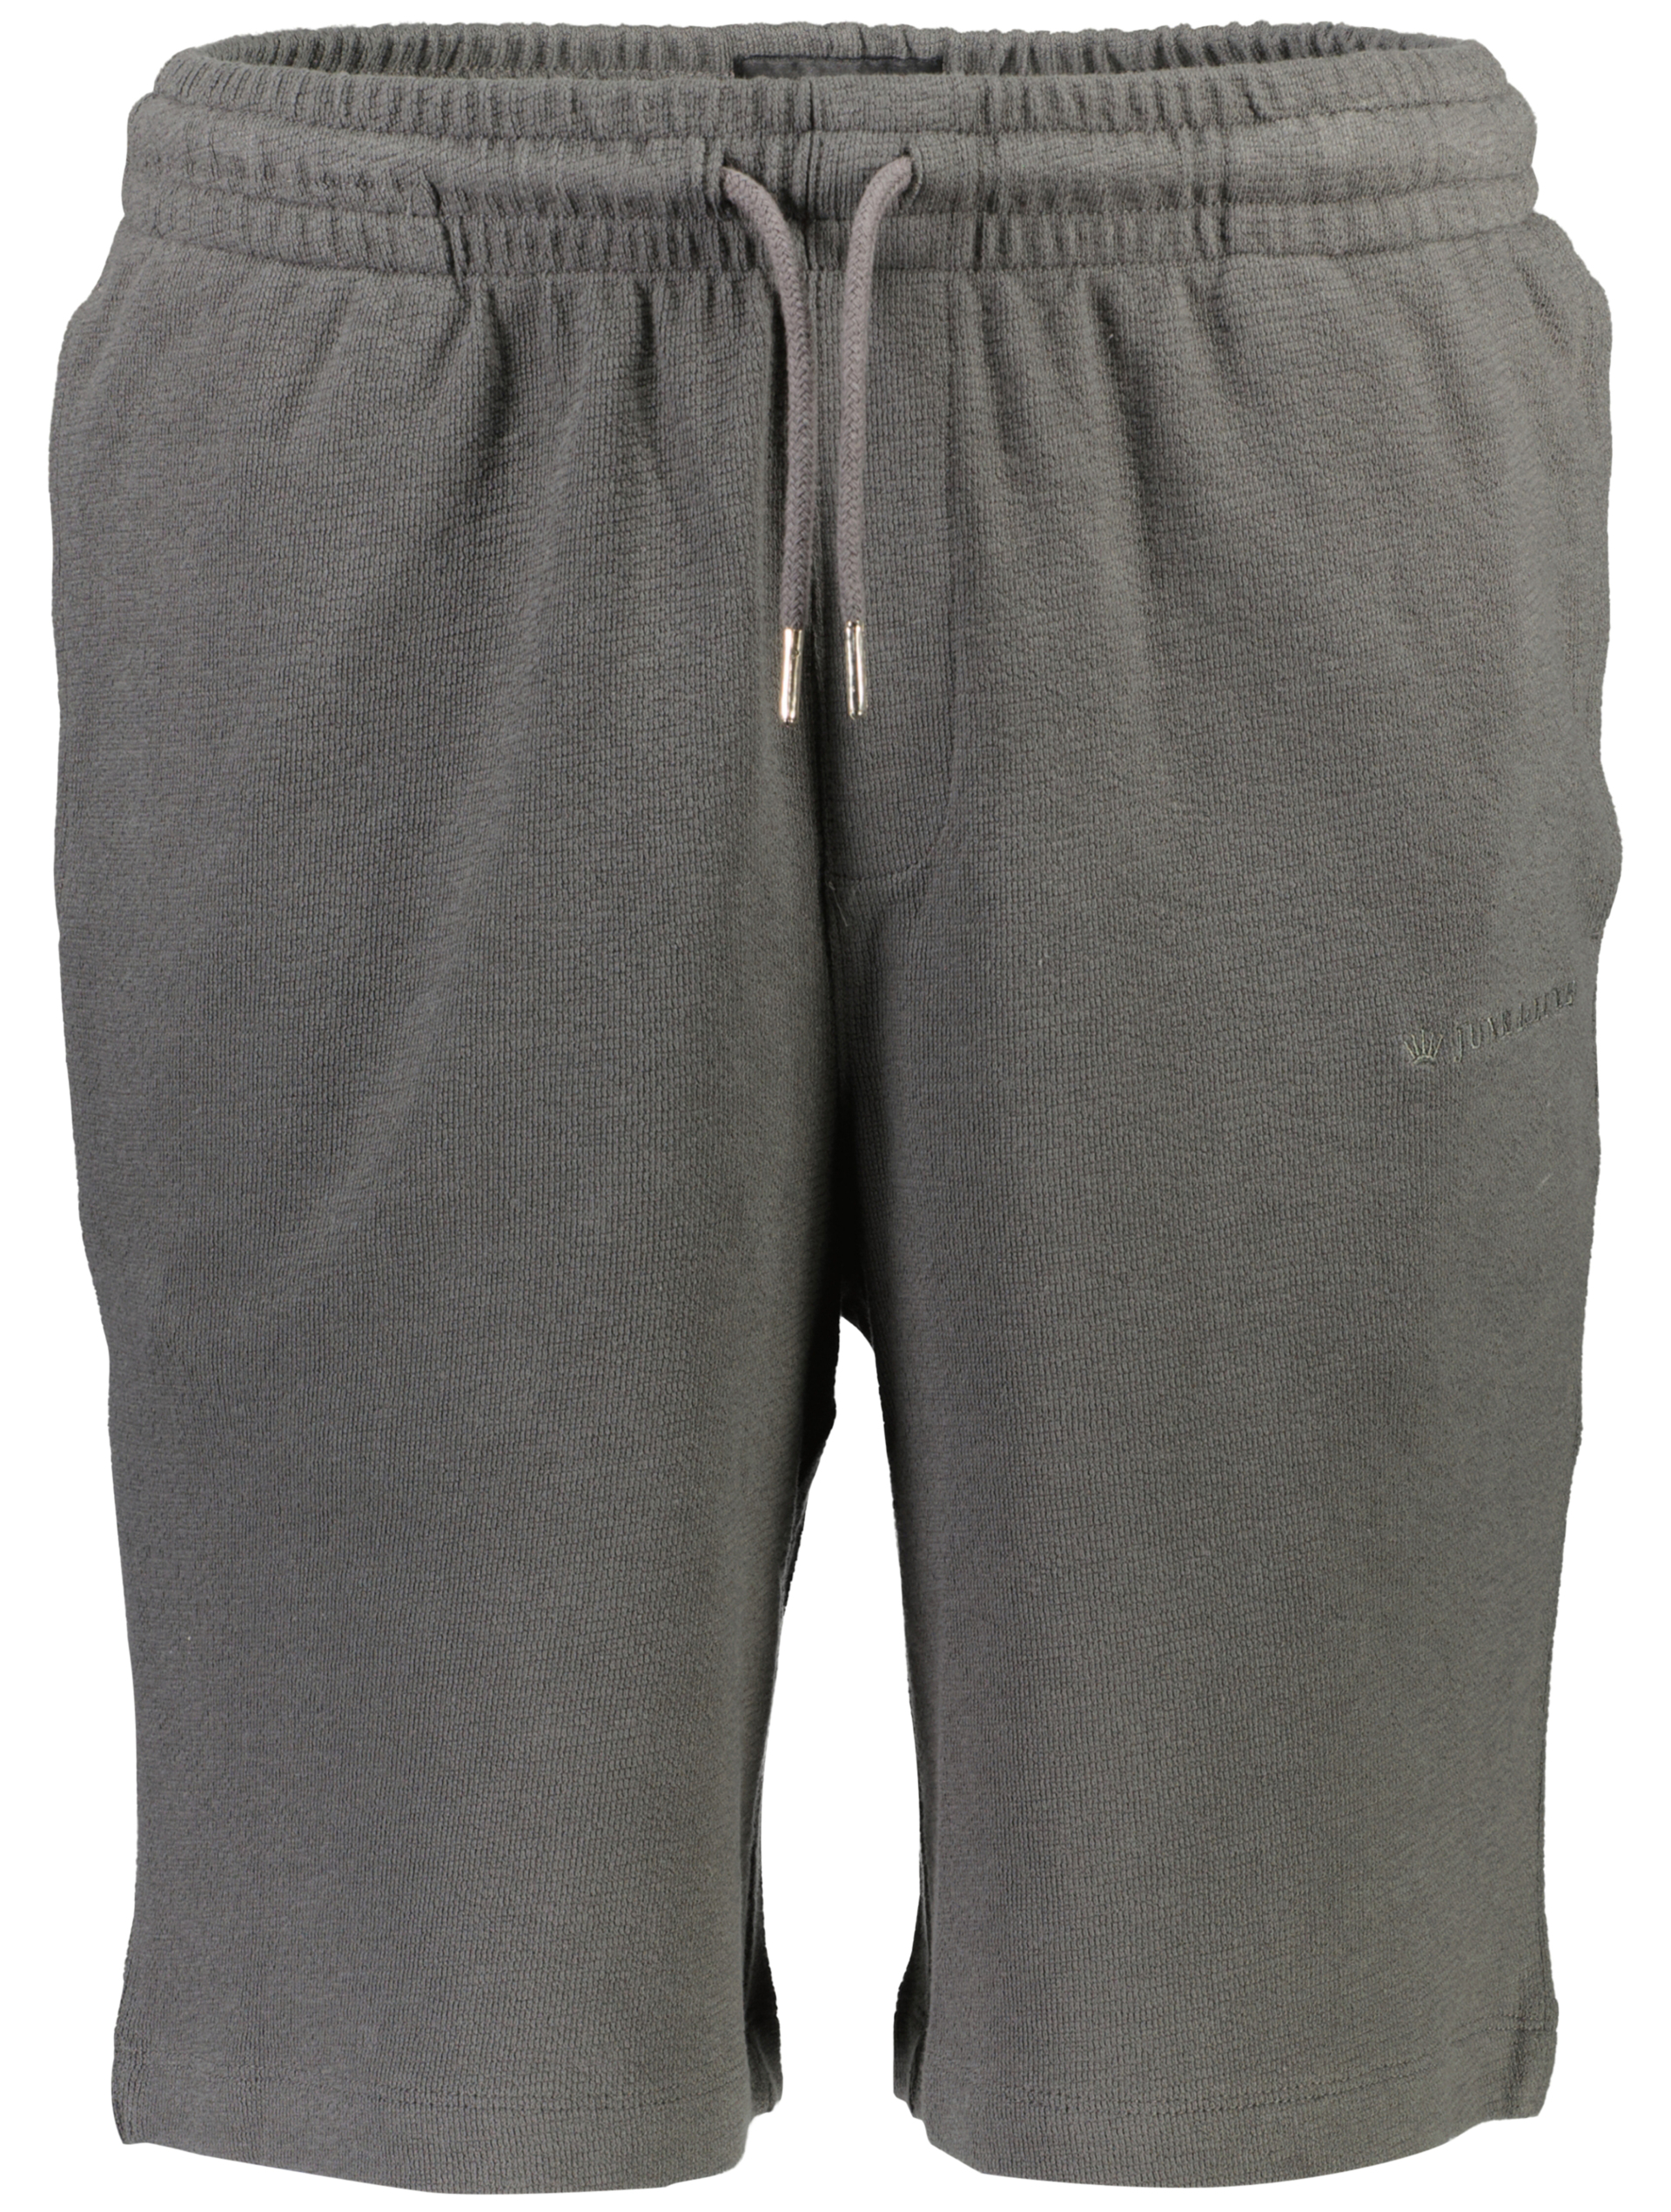 Junk de Luxe Casual shorts grå / charcoal